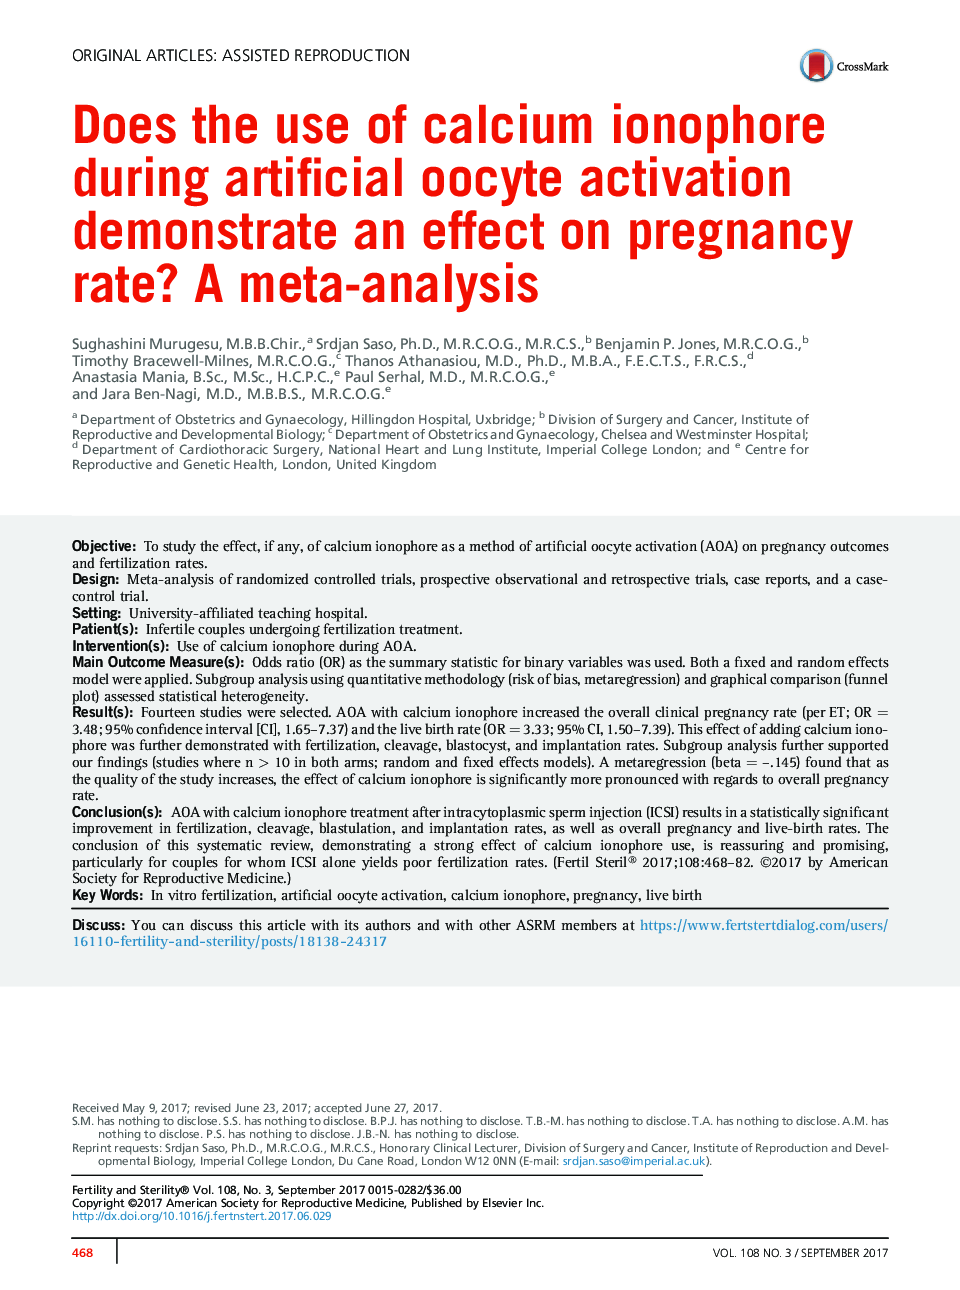 آیا استفاده از یونوفور کلسیم در طی فعال سازی اواسیت مصنوعی بر میزان بارداری تأثیر می گذارد؟ یک متا آنالیز 